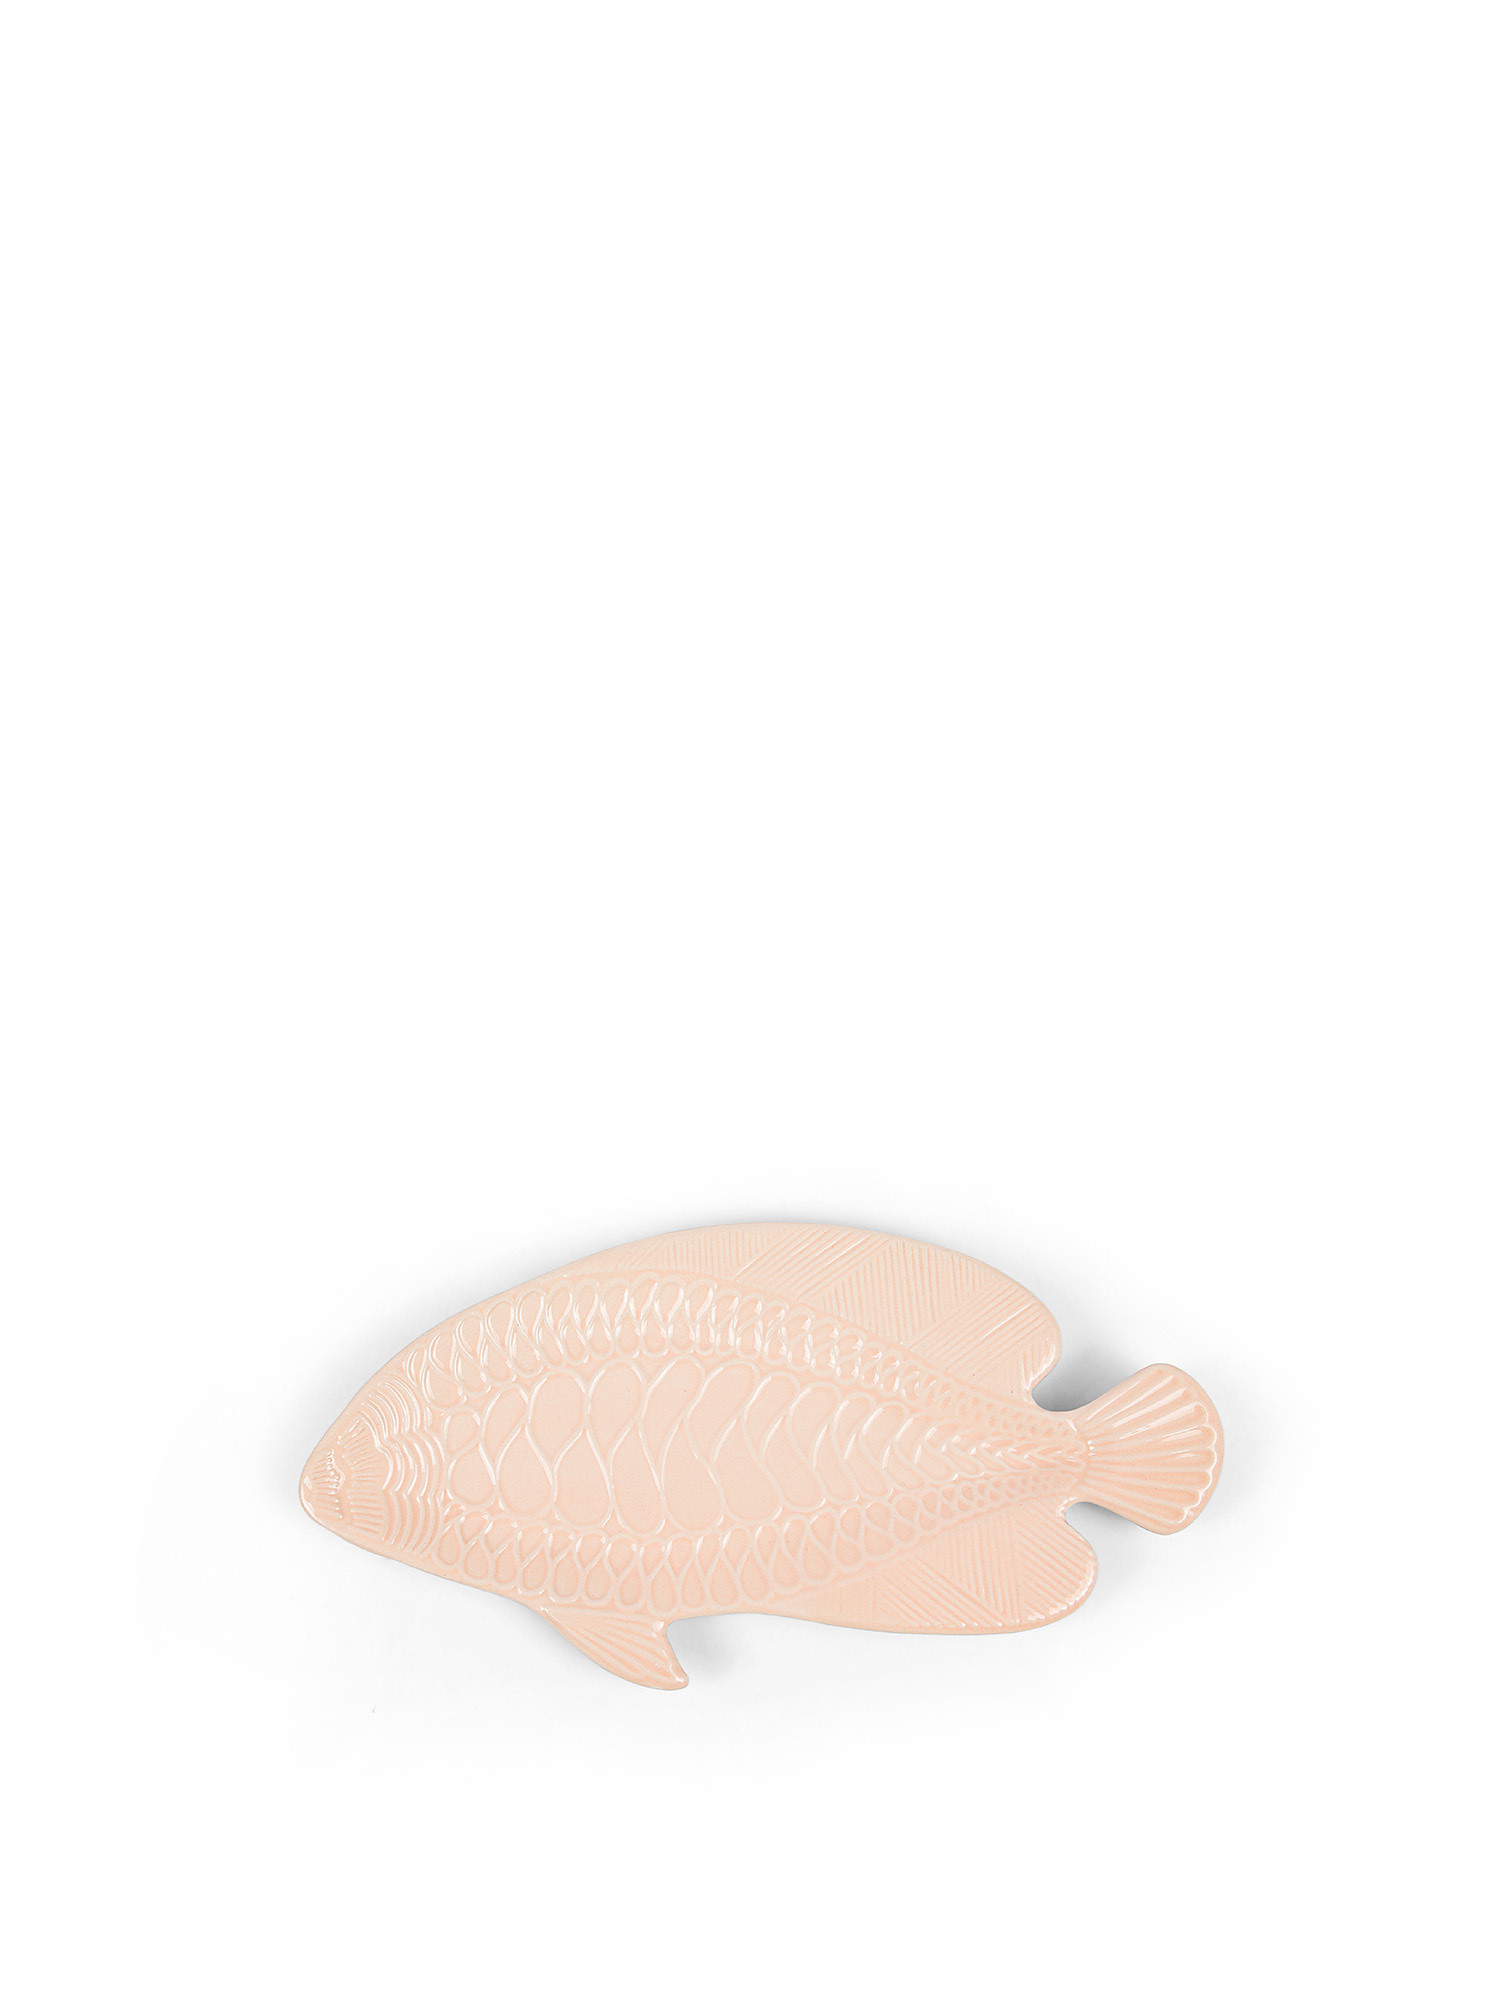 Piatto decorativo a forma di pesce, Rosa chiaro, large image number 0